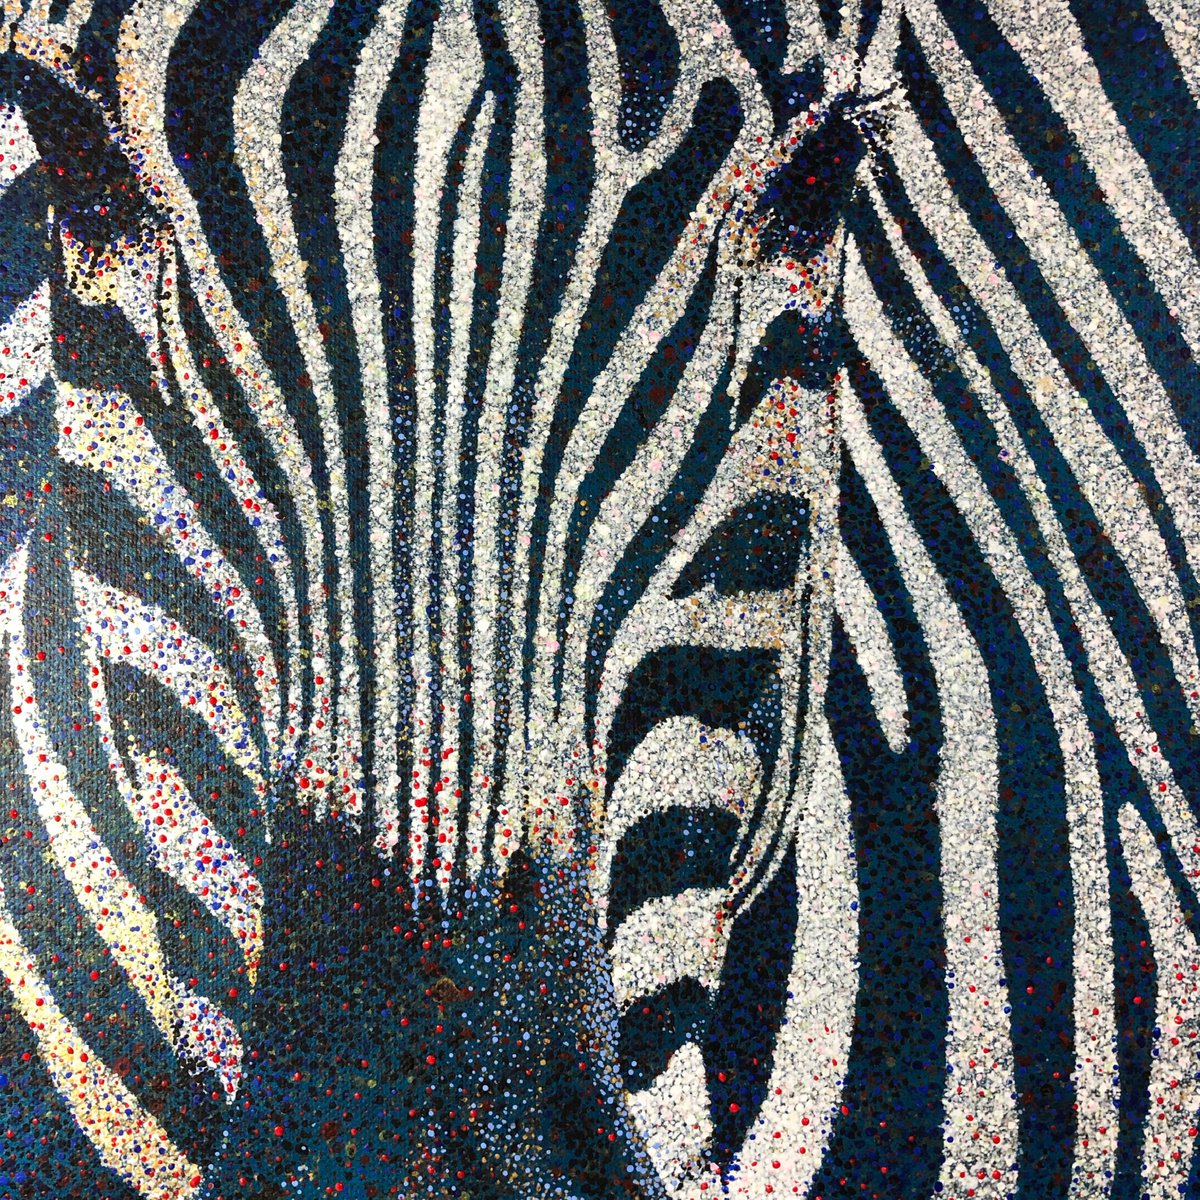 I see you - Zebra 2 by Amanda Deadman